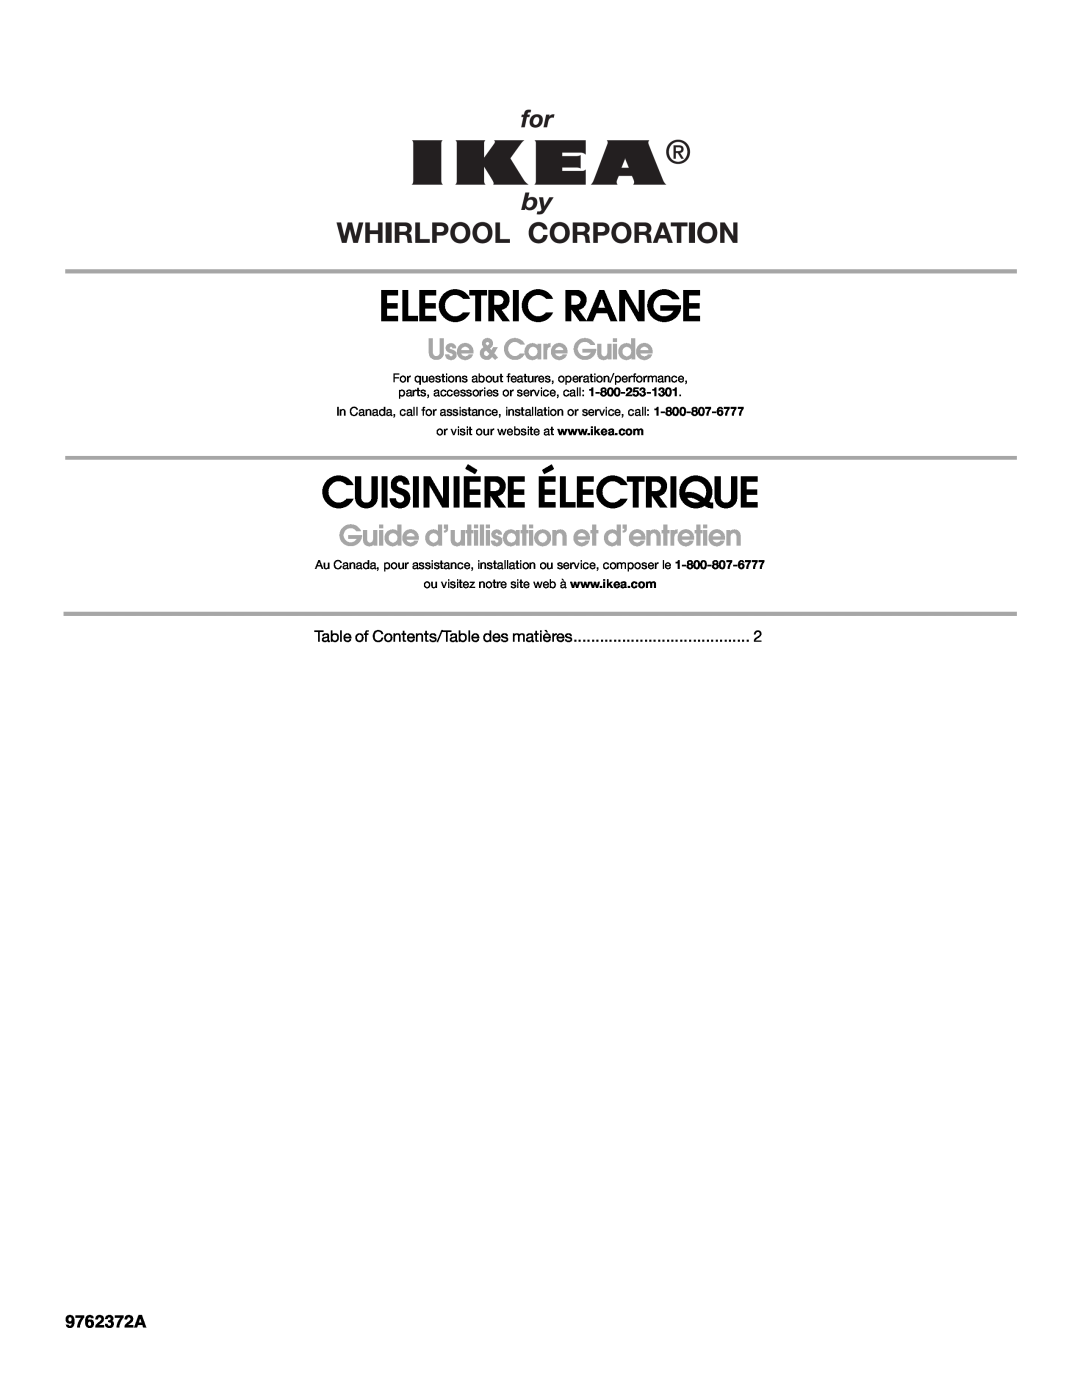 Whirlpool YIES366RS1 manual 9762372A, Electric Range, Cuisinière Électrique, Use & Care Guide 